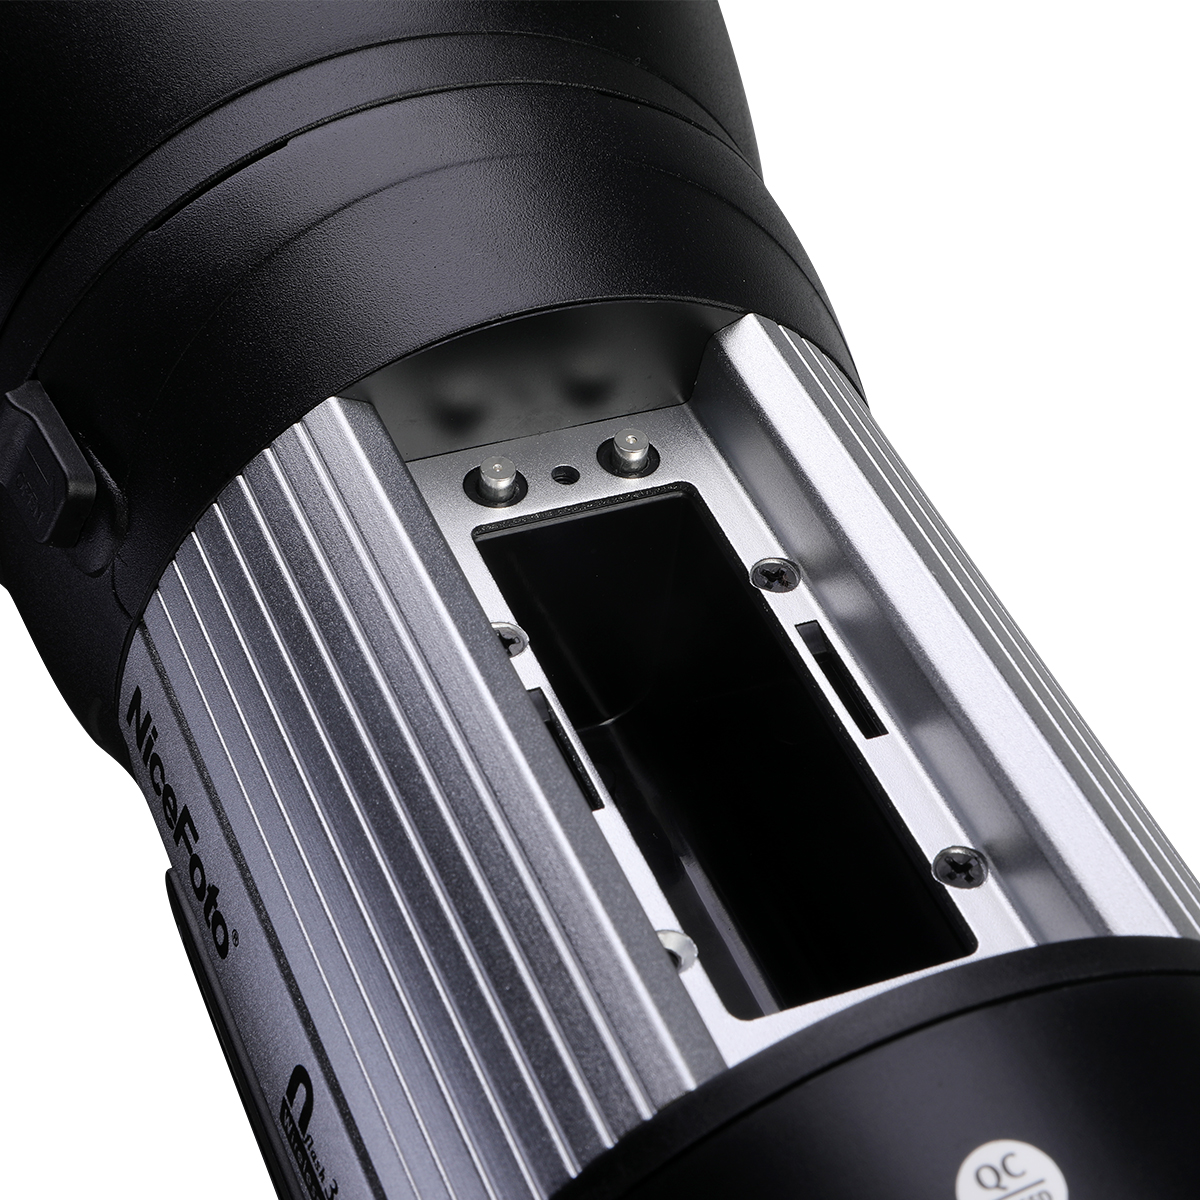 NiceFoto Nflash 300ws Đèn flash Studio thiết bị chụp ảnh cho ngoài trời Tính năng sản phẩm: